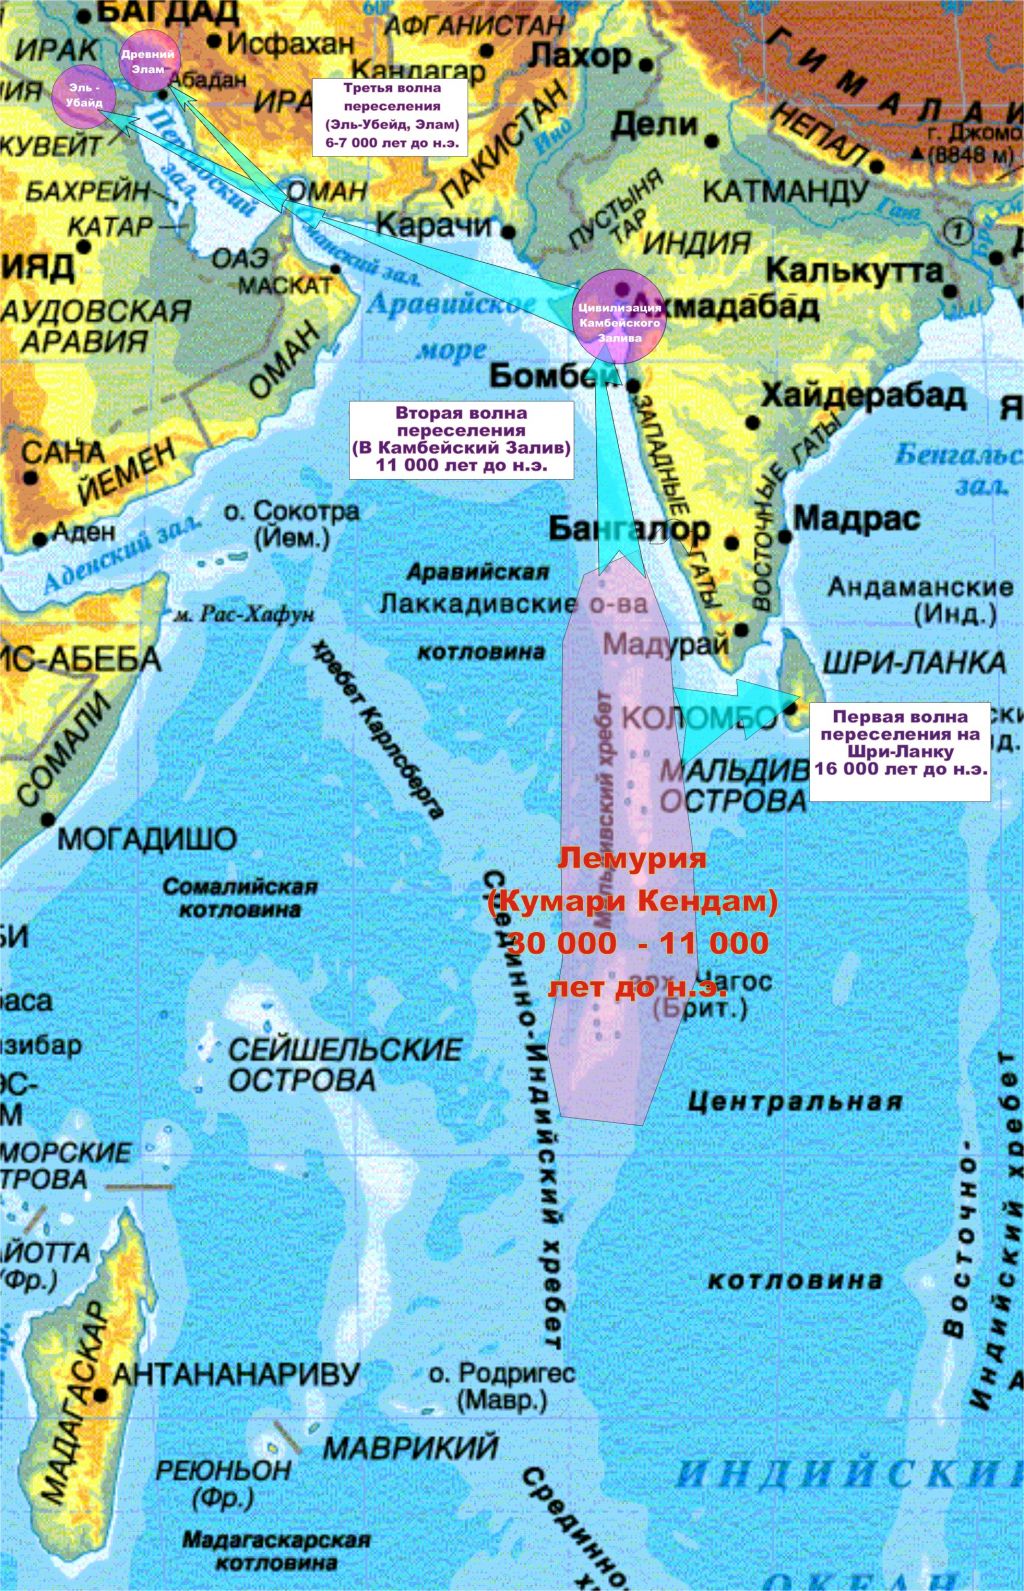 Какие острова индийского океана. Андаманское море на карте индийского океана. Индийский океан на карте. Острова индийского океана на карте. Политическая карта индийского океана.